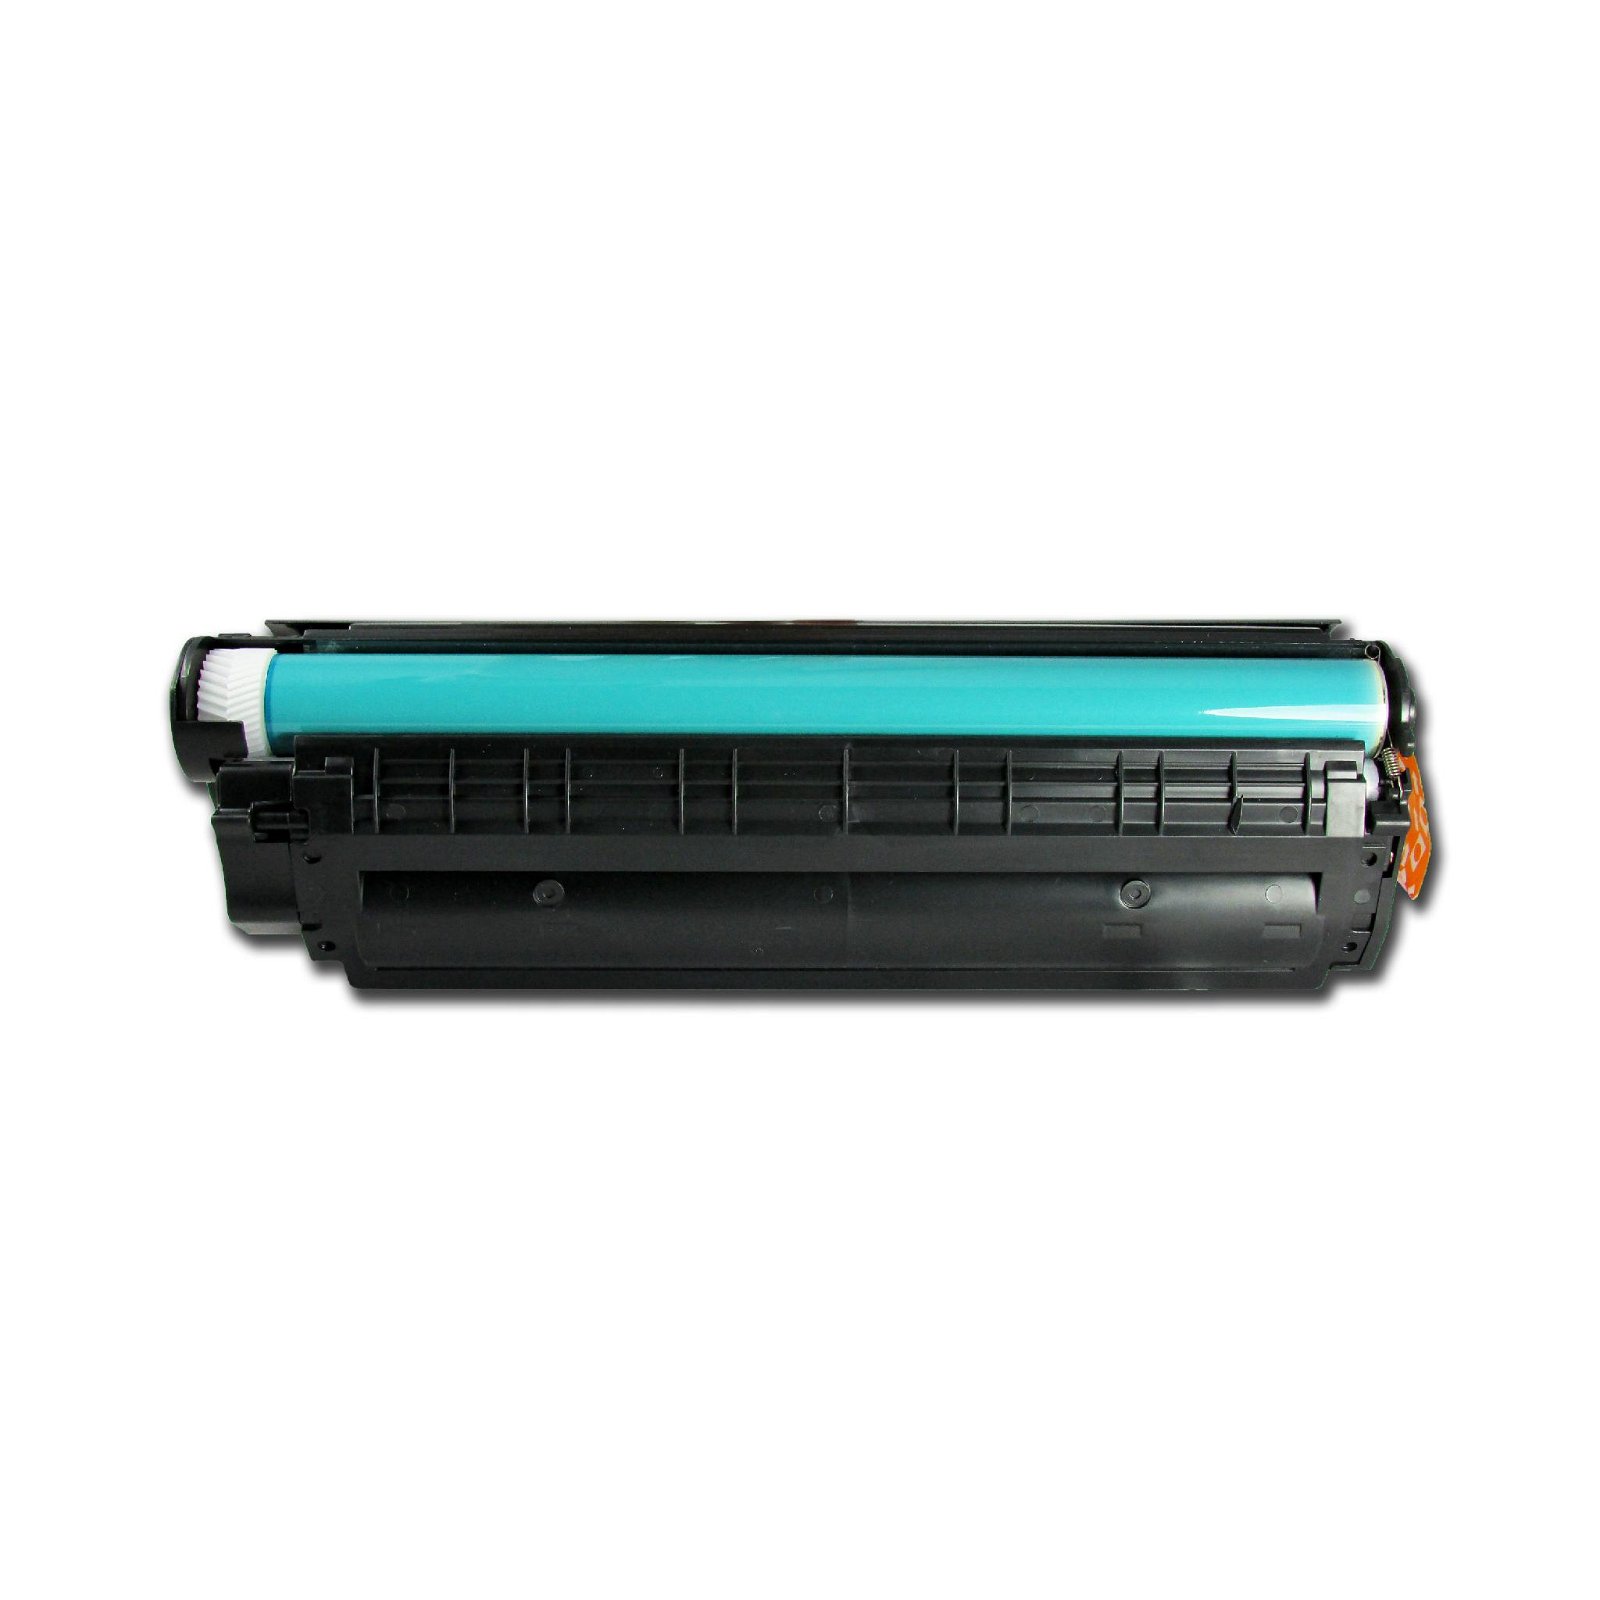 HP toner cartridge Q2612A 2